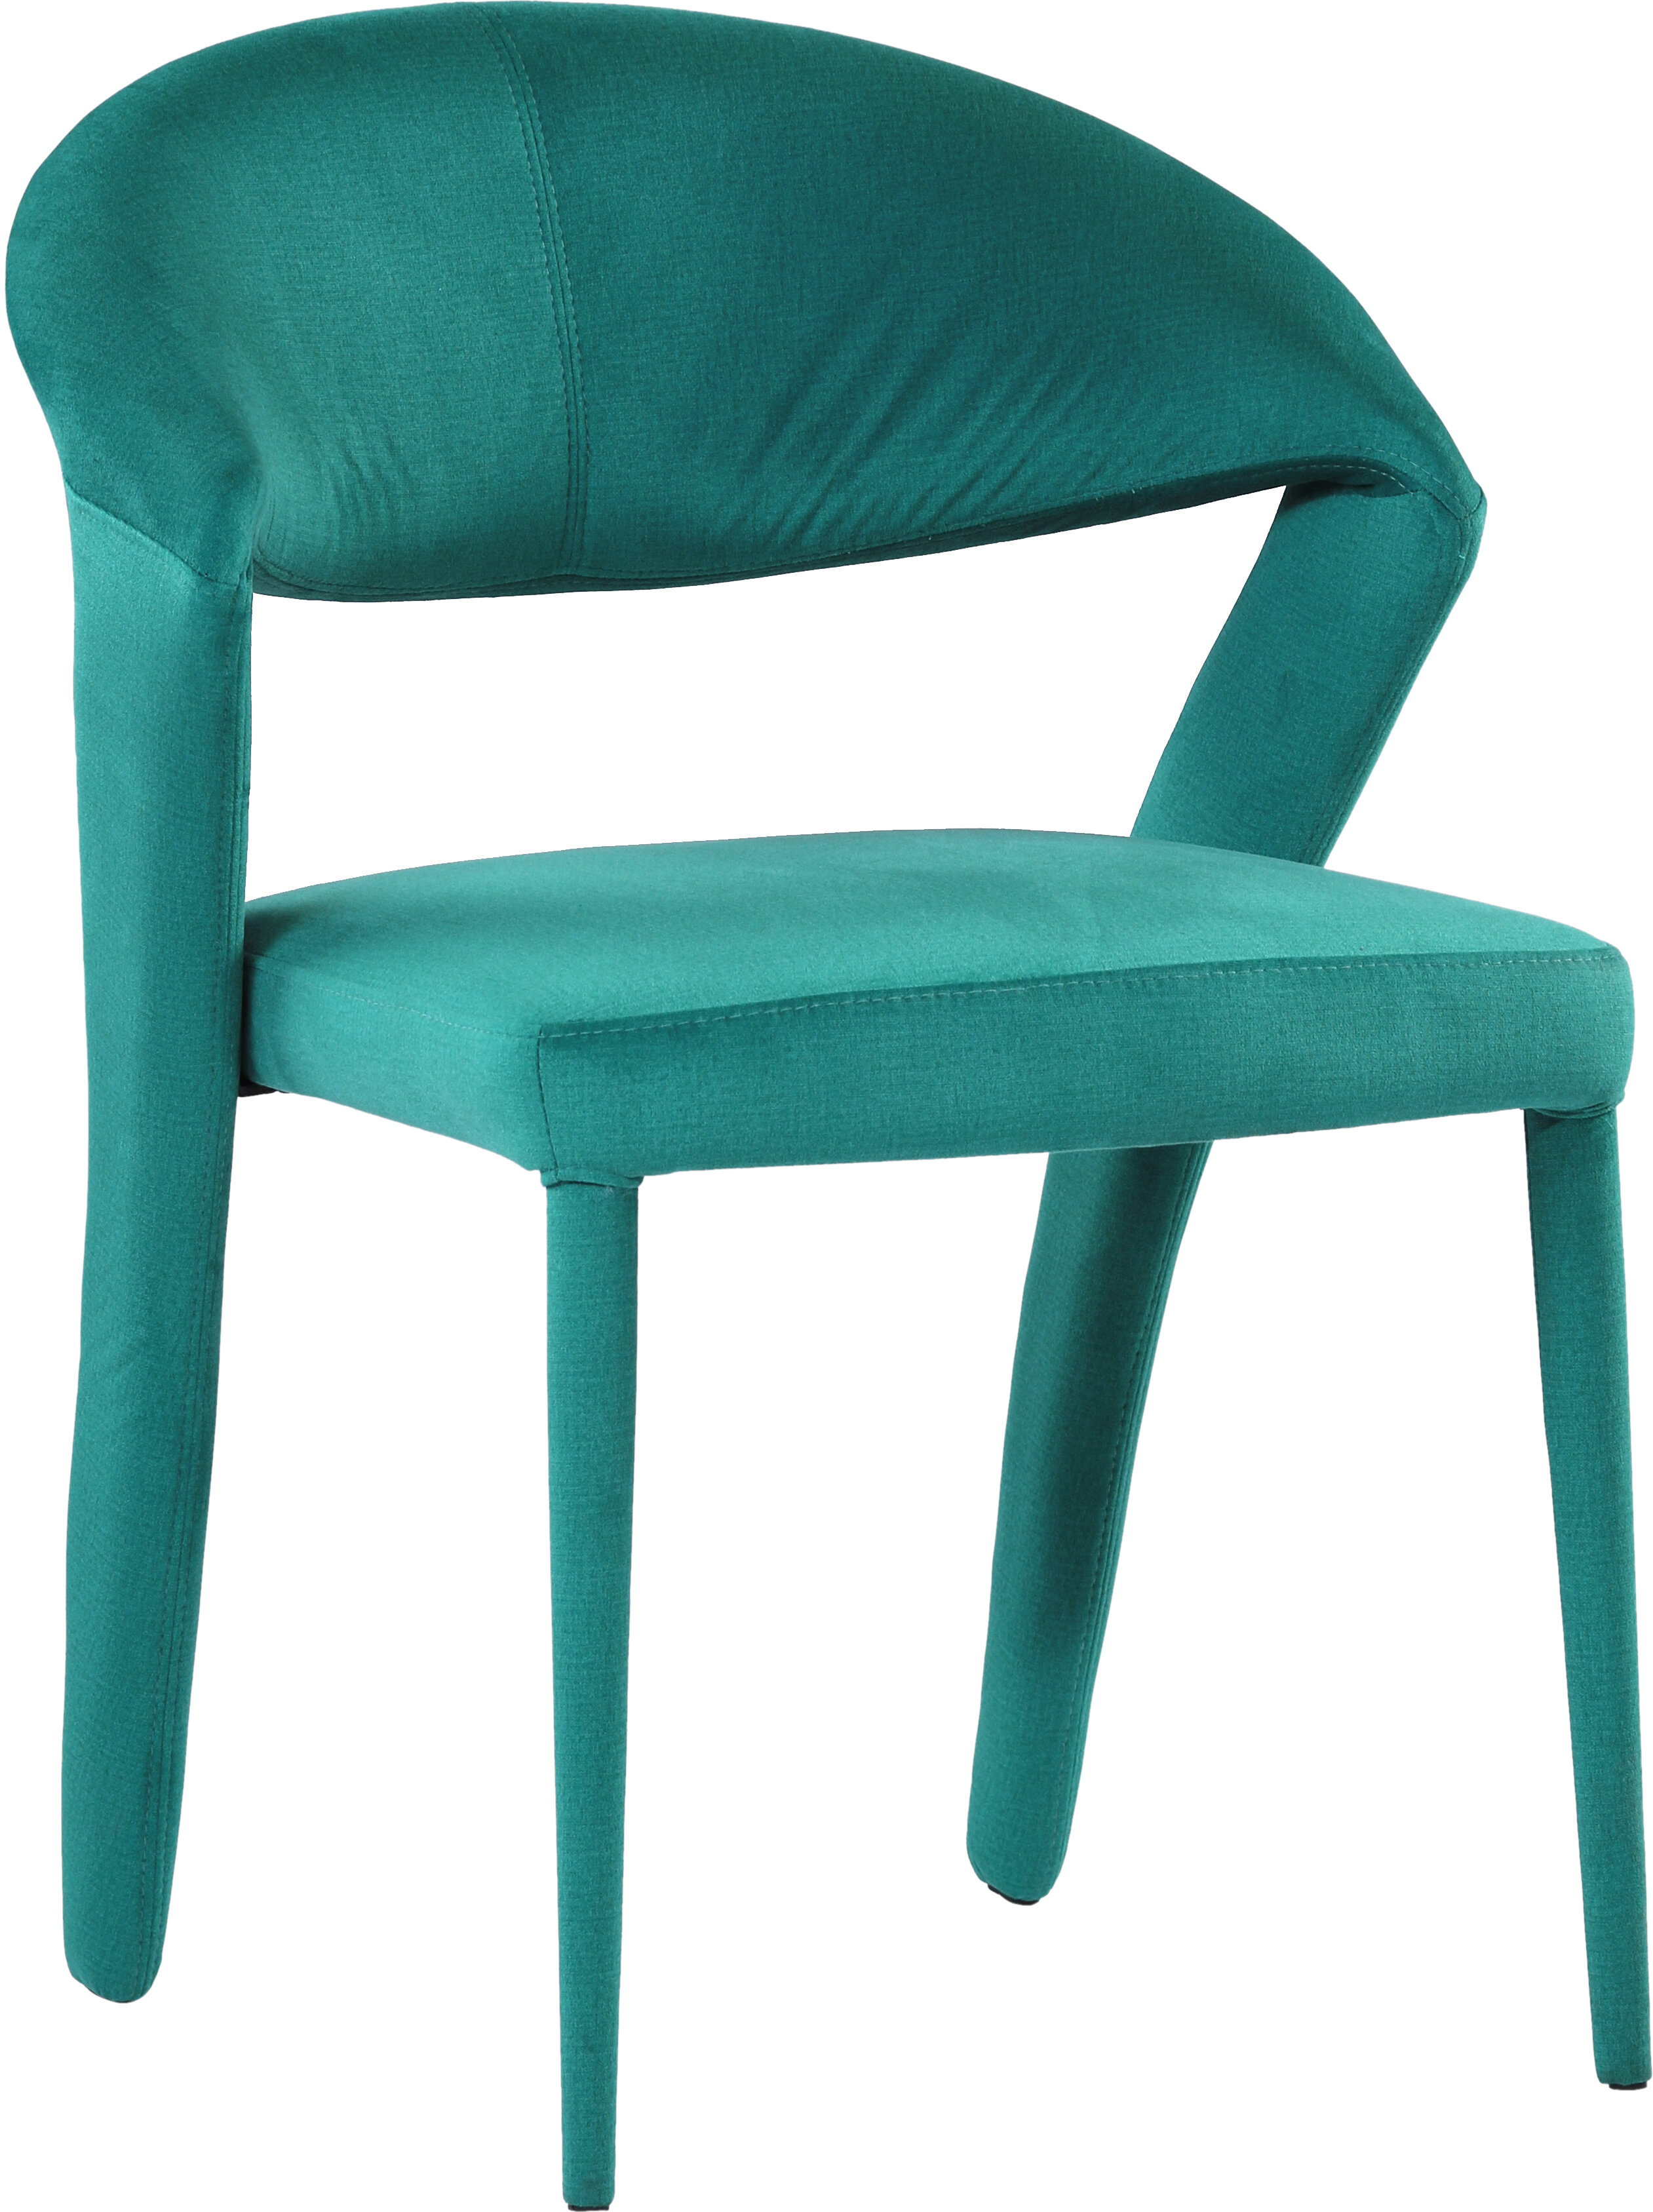 Everly Quinn Keeler Upholstered Dining Chair Wayfair Ca